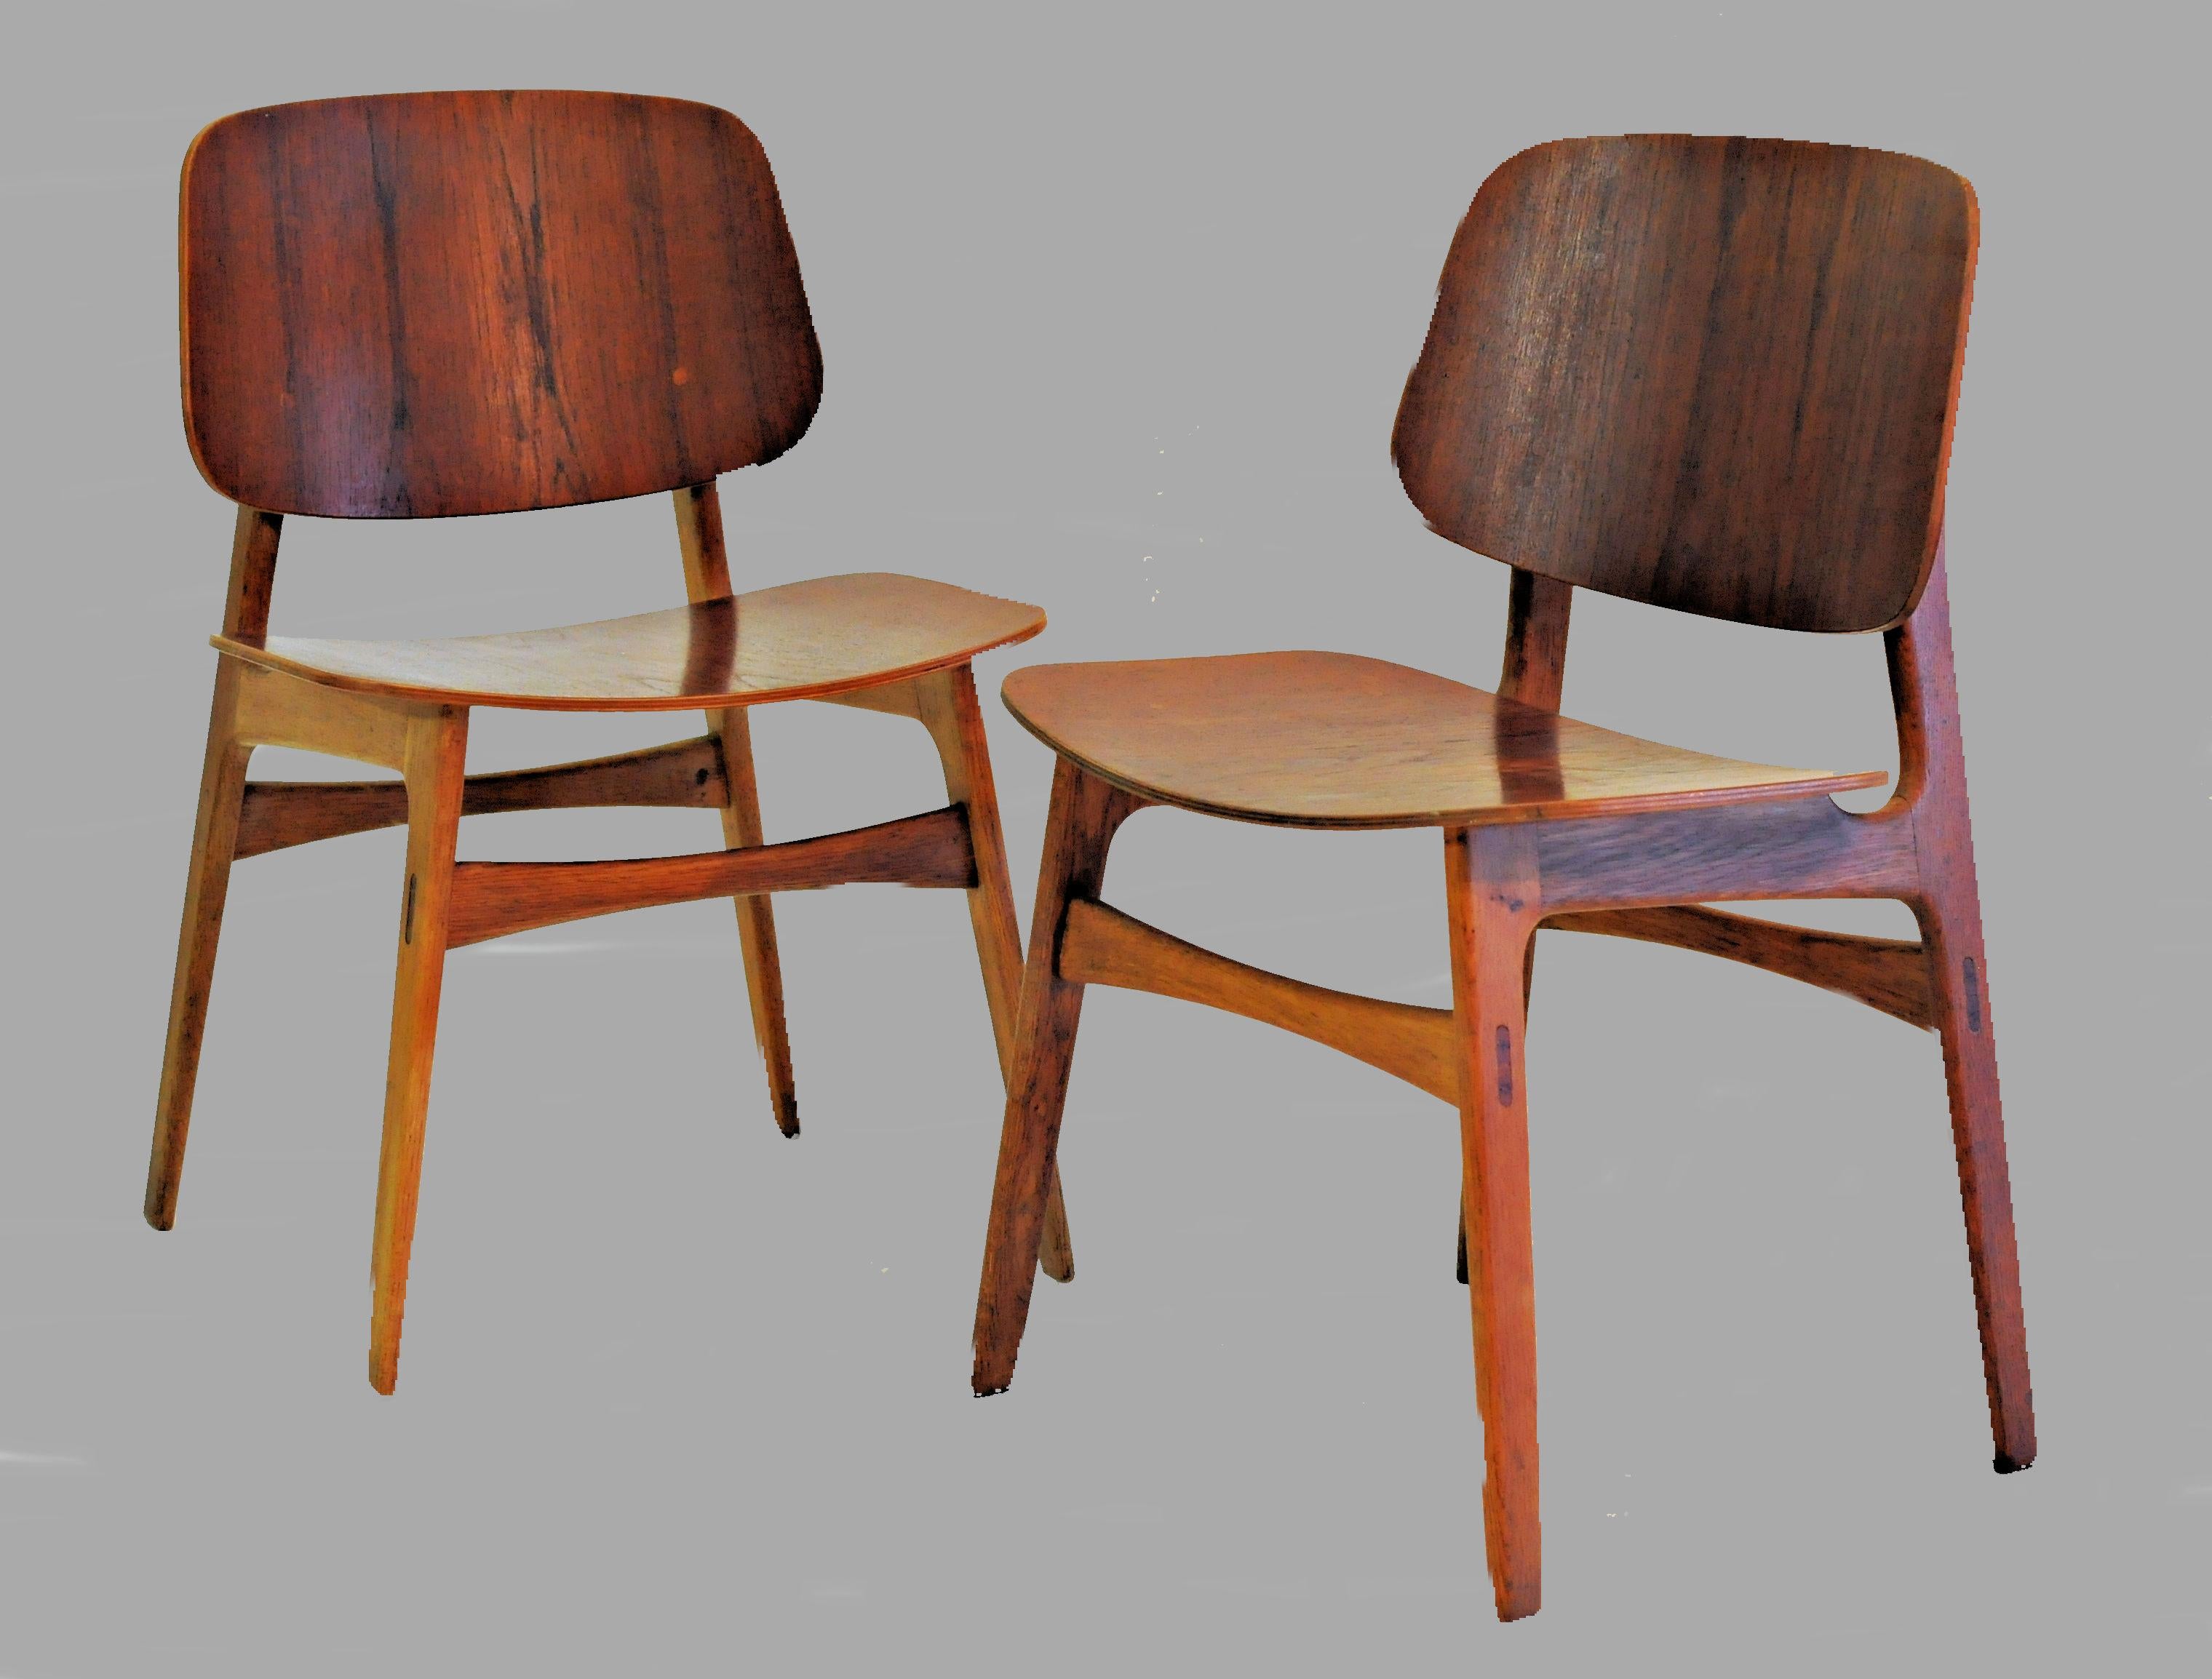 Ensemble de deux chaises coquilles conçues en 1950 pour Søborg Møbelfabrik. 

La chaise coquille se distingue par l'utilisation d'une technique de moulage en contreplaqué. La chaise se compose de deux coques en teck larges et légèrement incurvées,